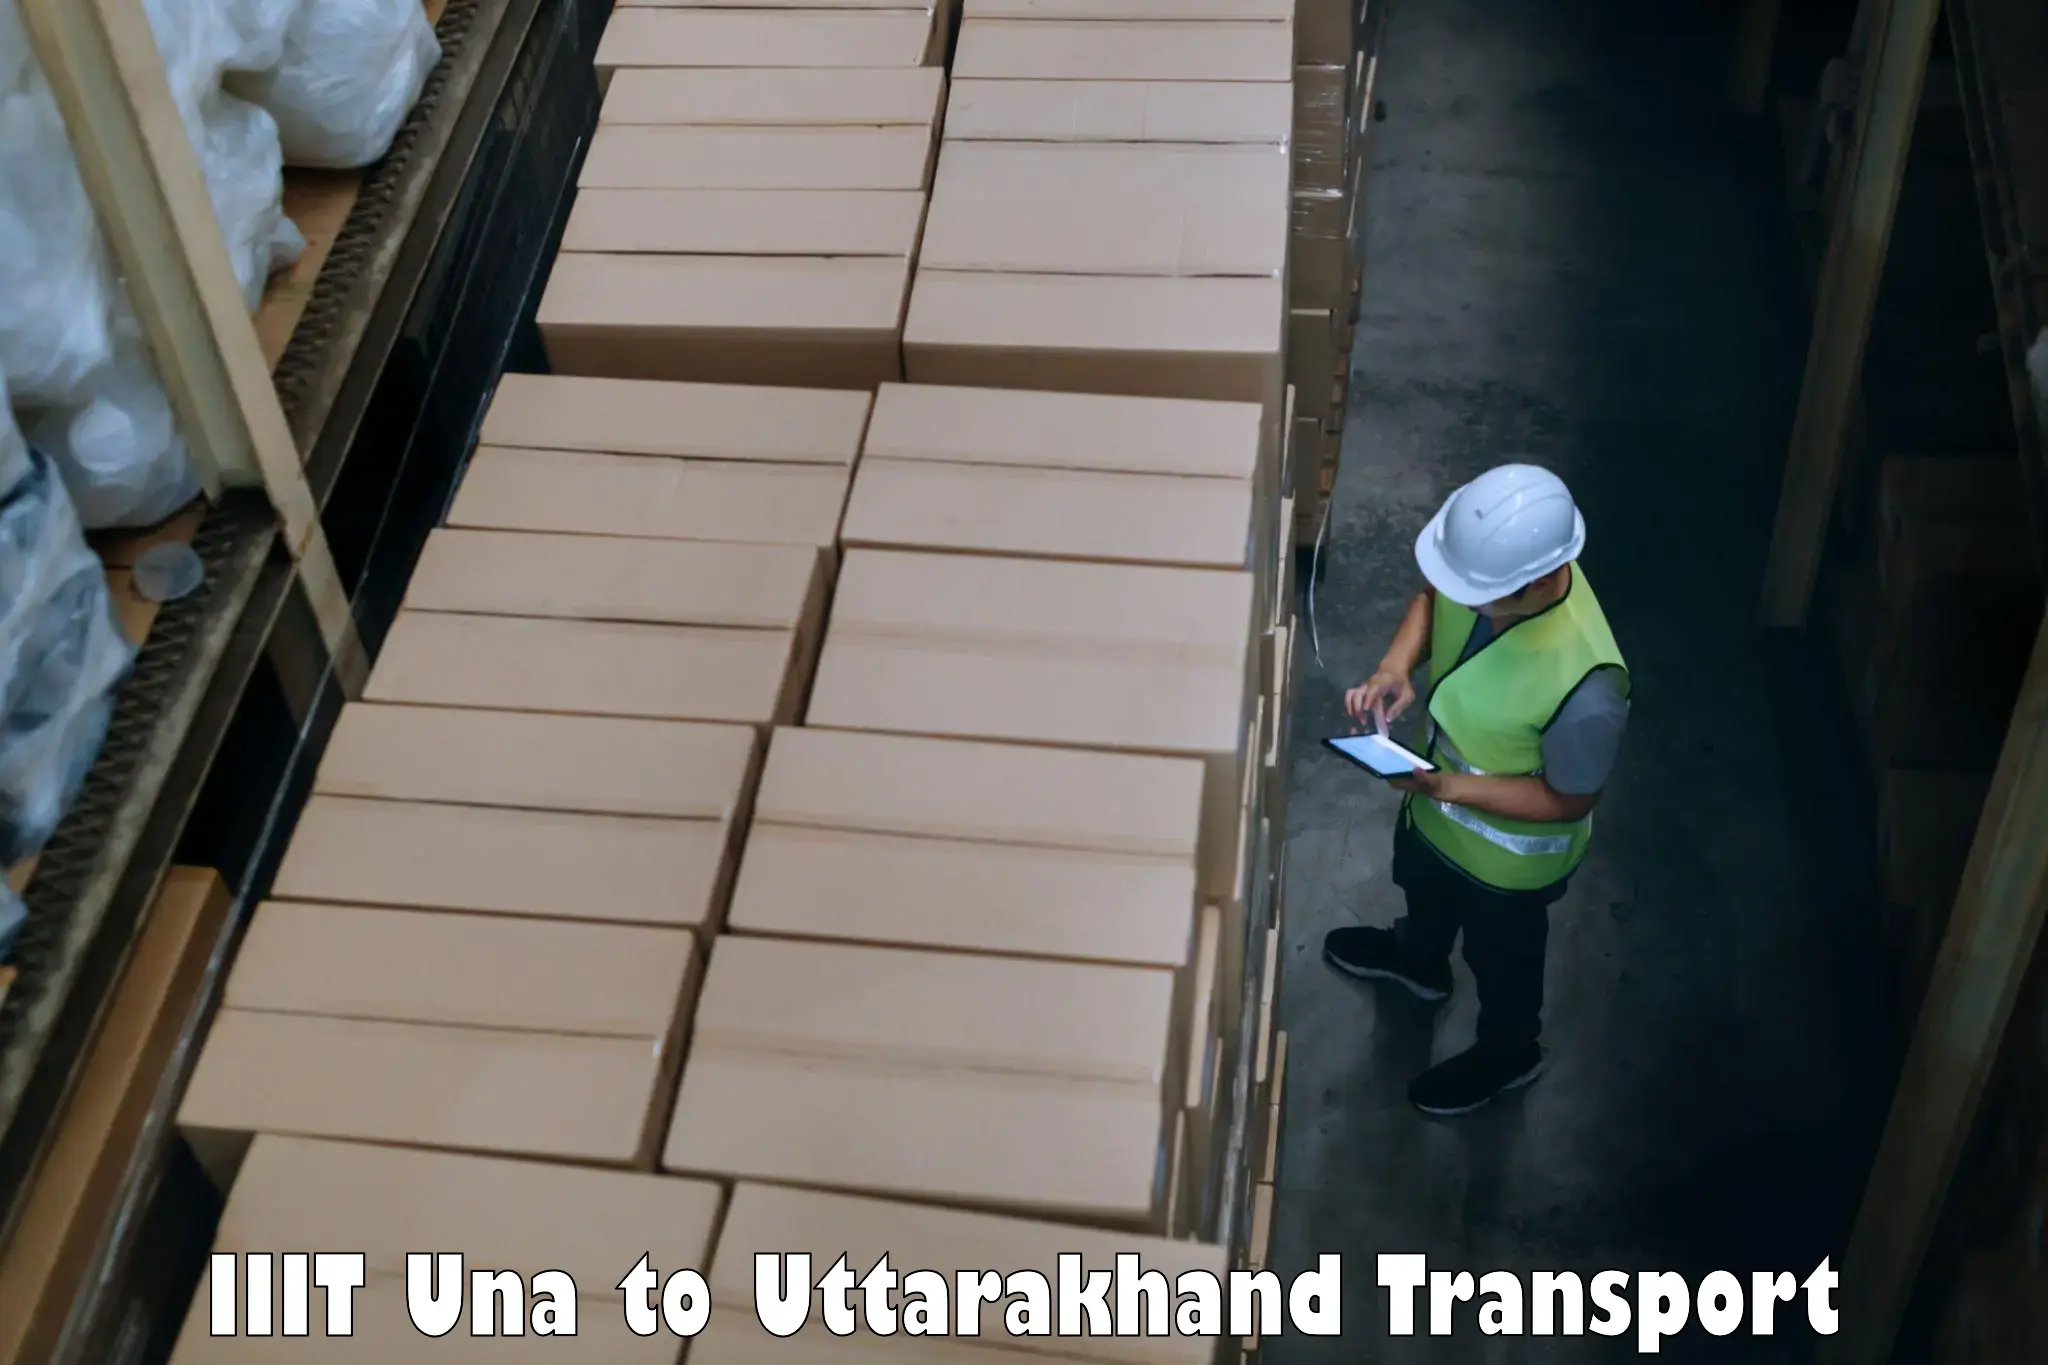 India truck logistics services IIIT Una to Dehradun